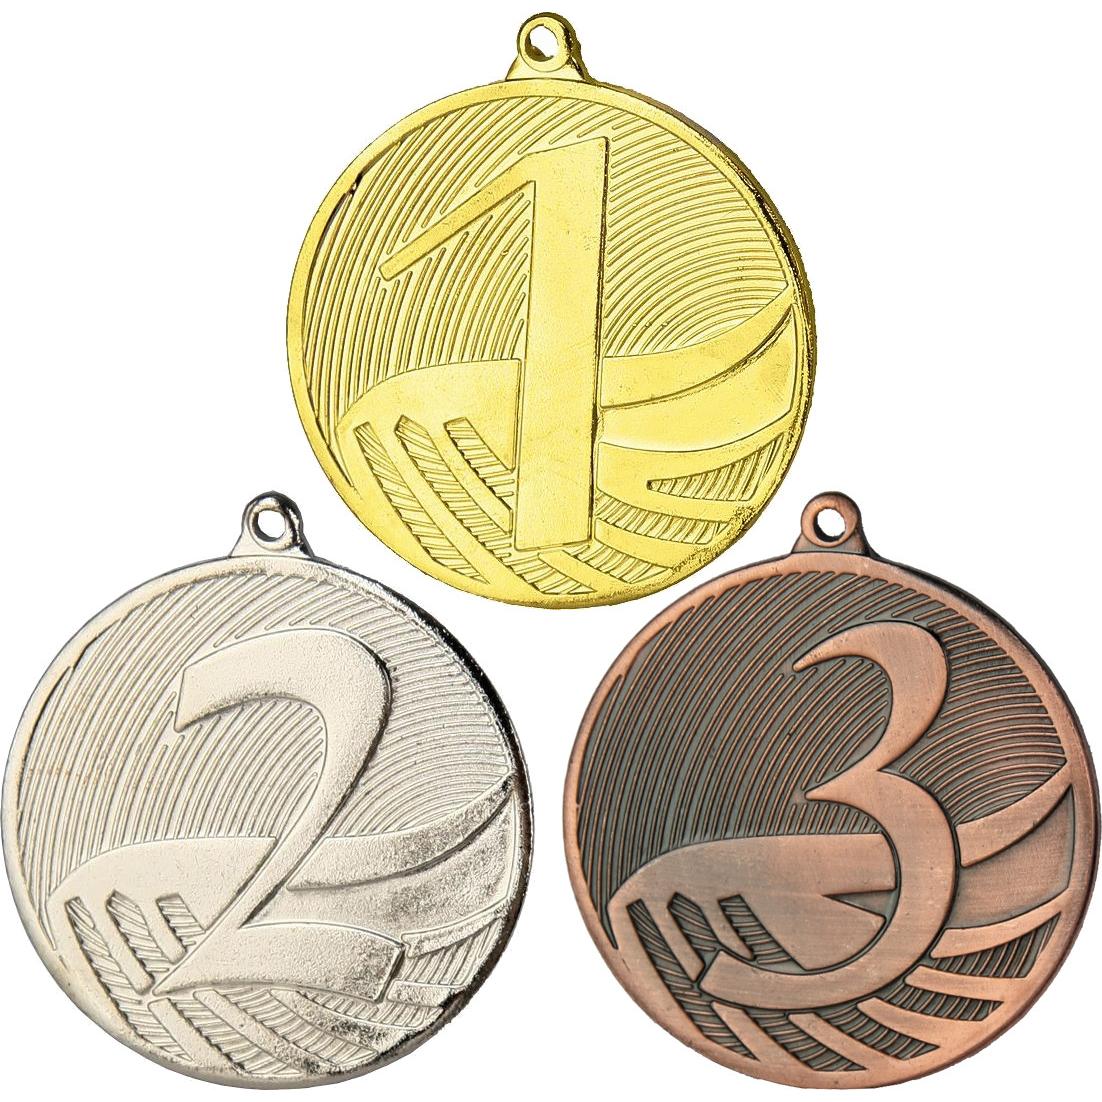 Комплект из трёх медалей №3492 (1, 2, 3 место, диаметр 70 мм, металл. Место для вставок: лицевая диаметр 25 мм, обратная сторона диаметр 46 мм)